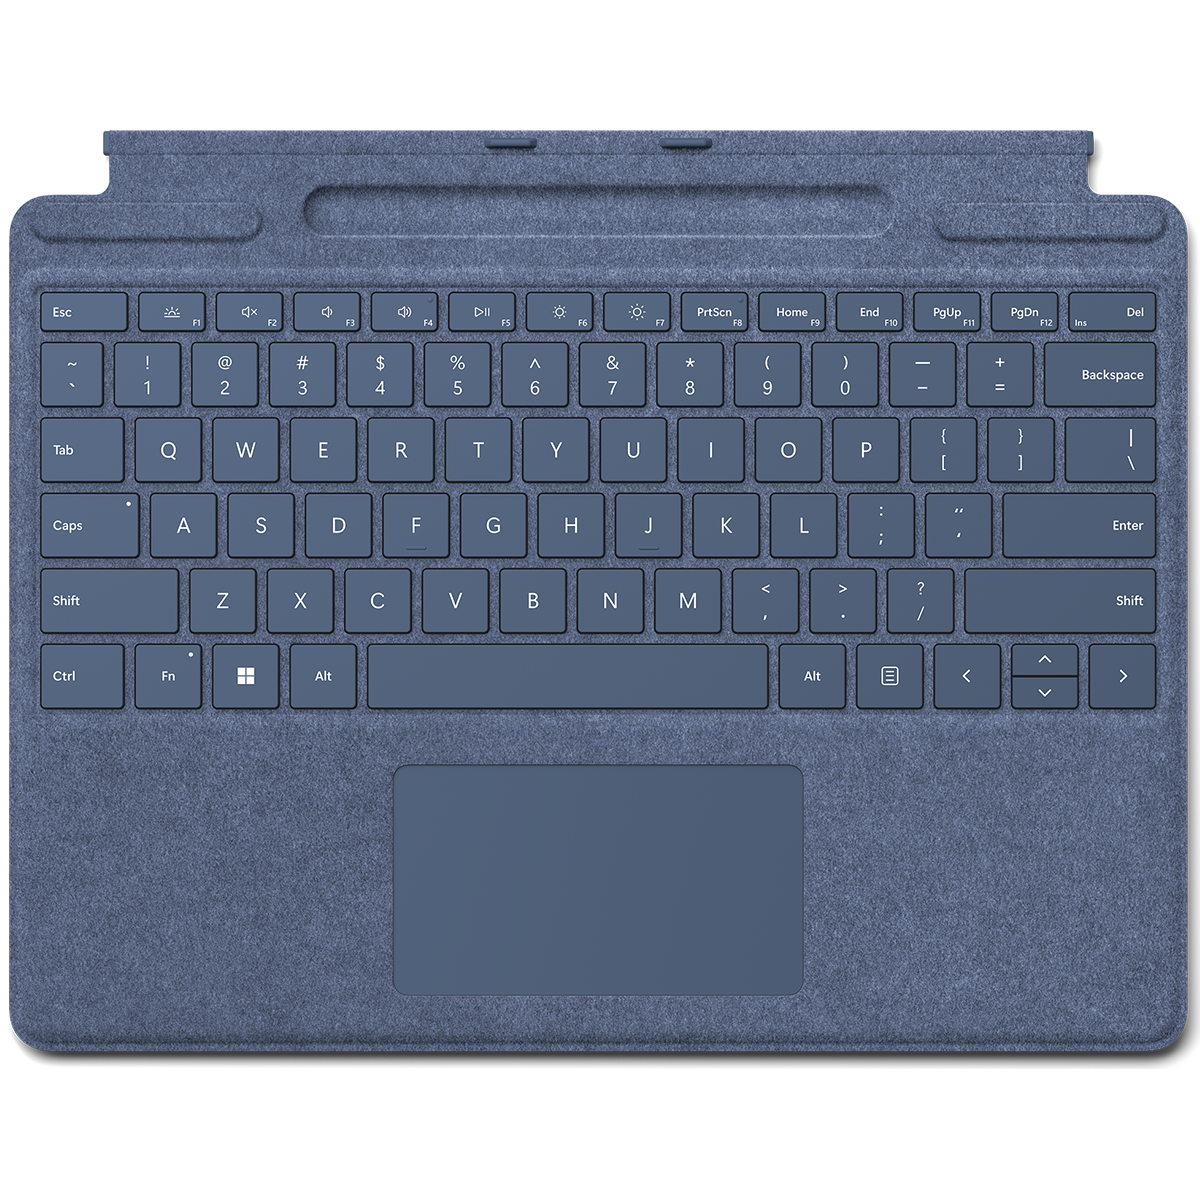  کیبورد تبلت مایکروسافت مدل Signature مناسب برای تبلت سرفیس پرو 8 -آبی